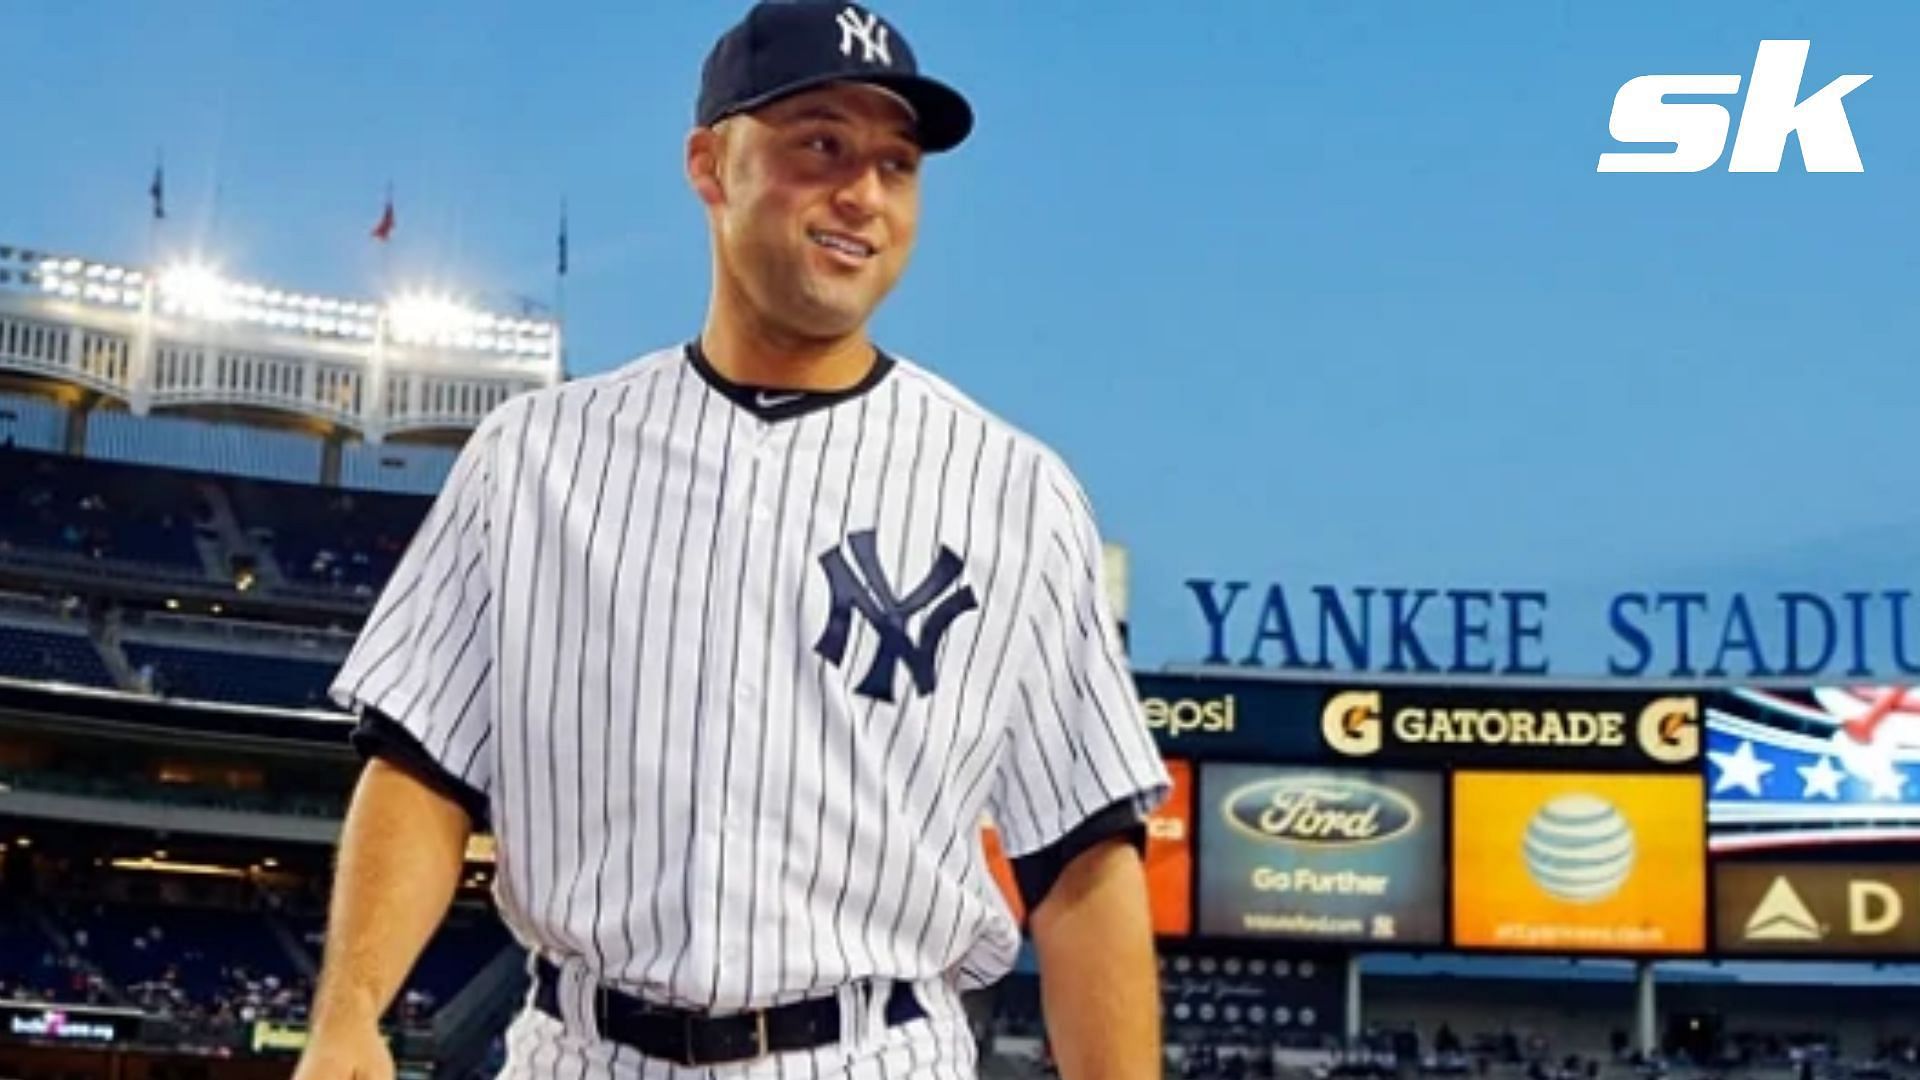 New York Yankees player Derek Jeter retired in 2014. 